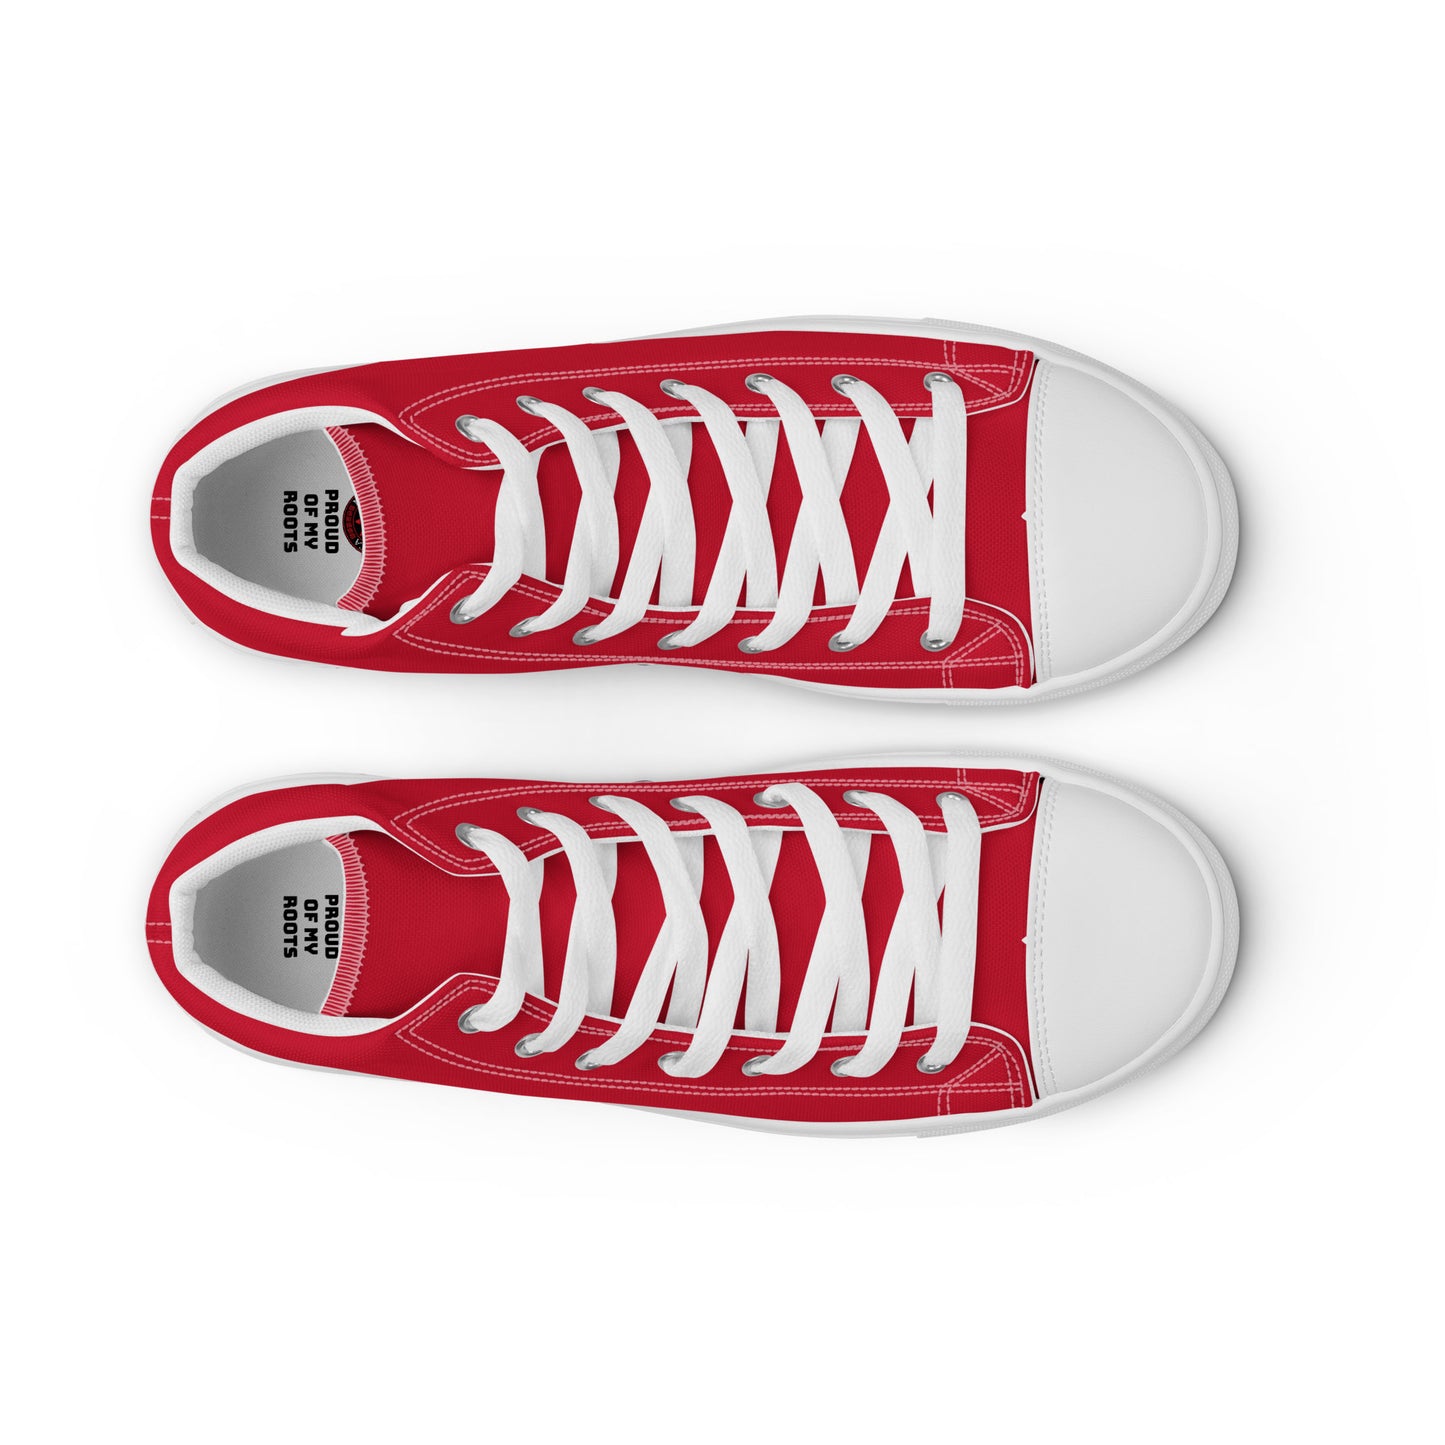 Chile - Hombre - Rojo - Zapatos High top